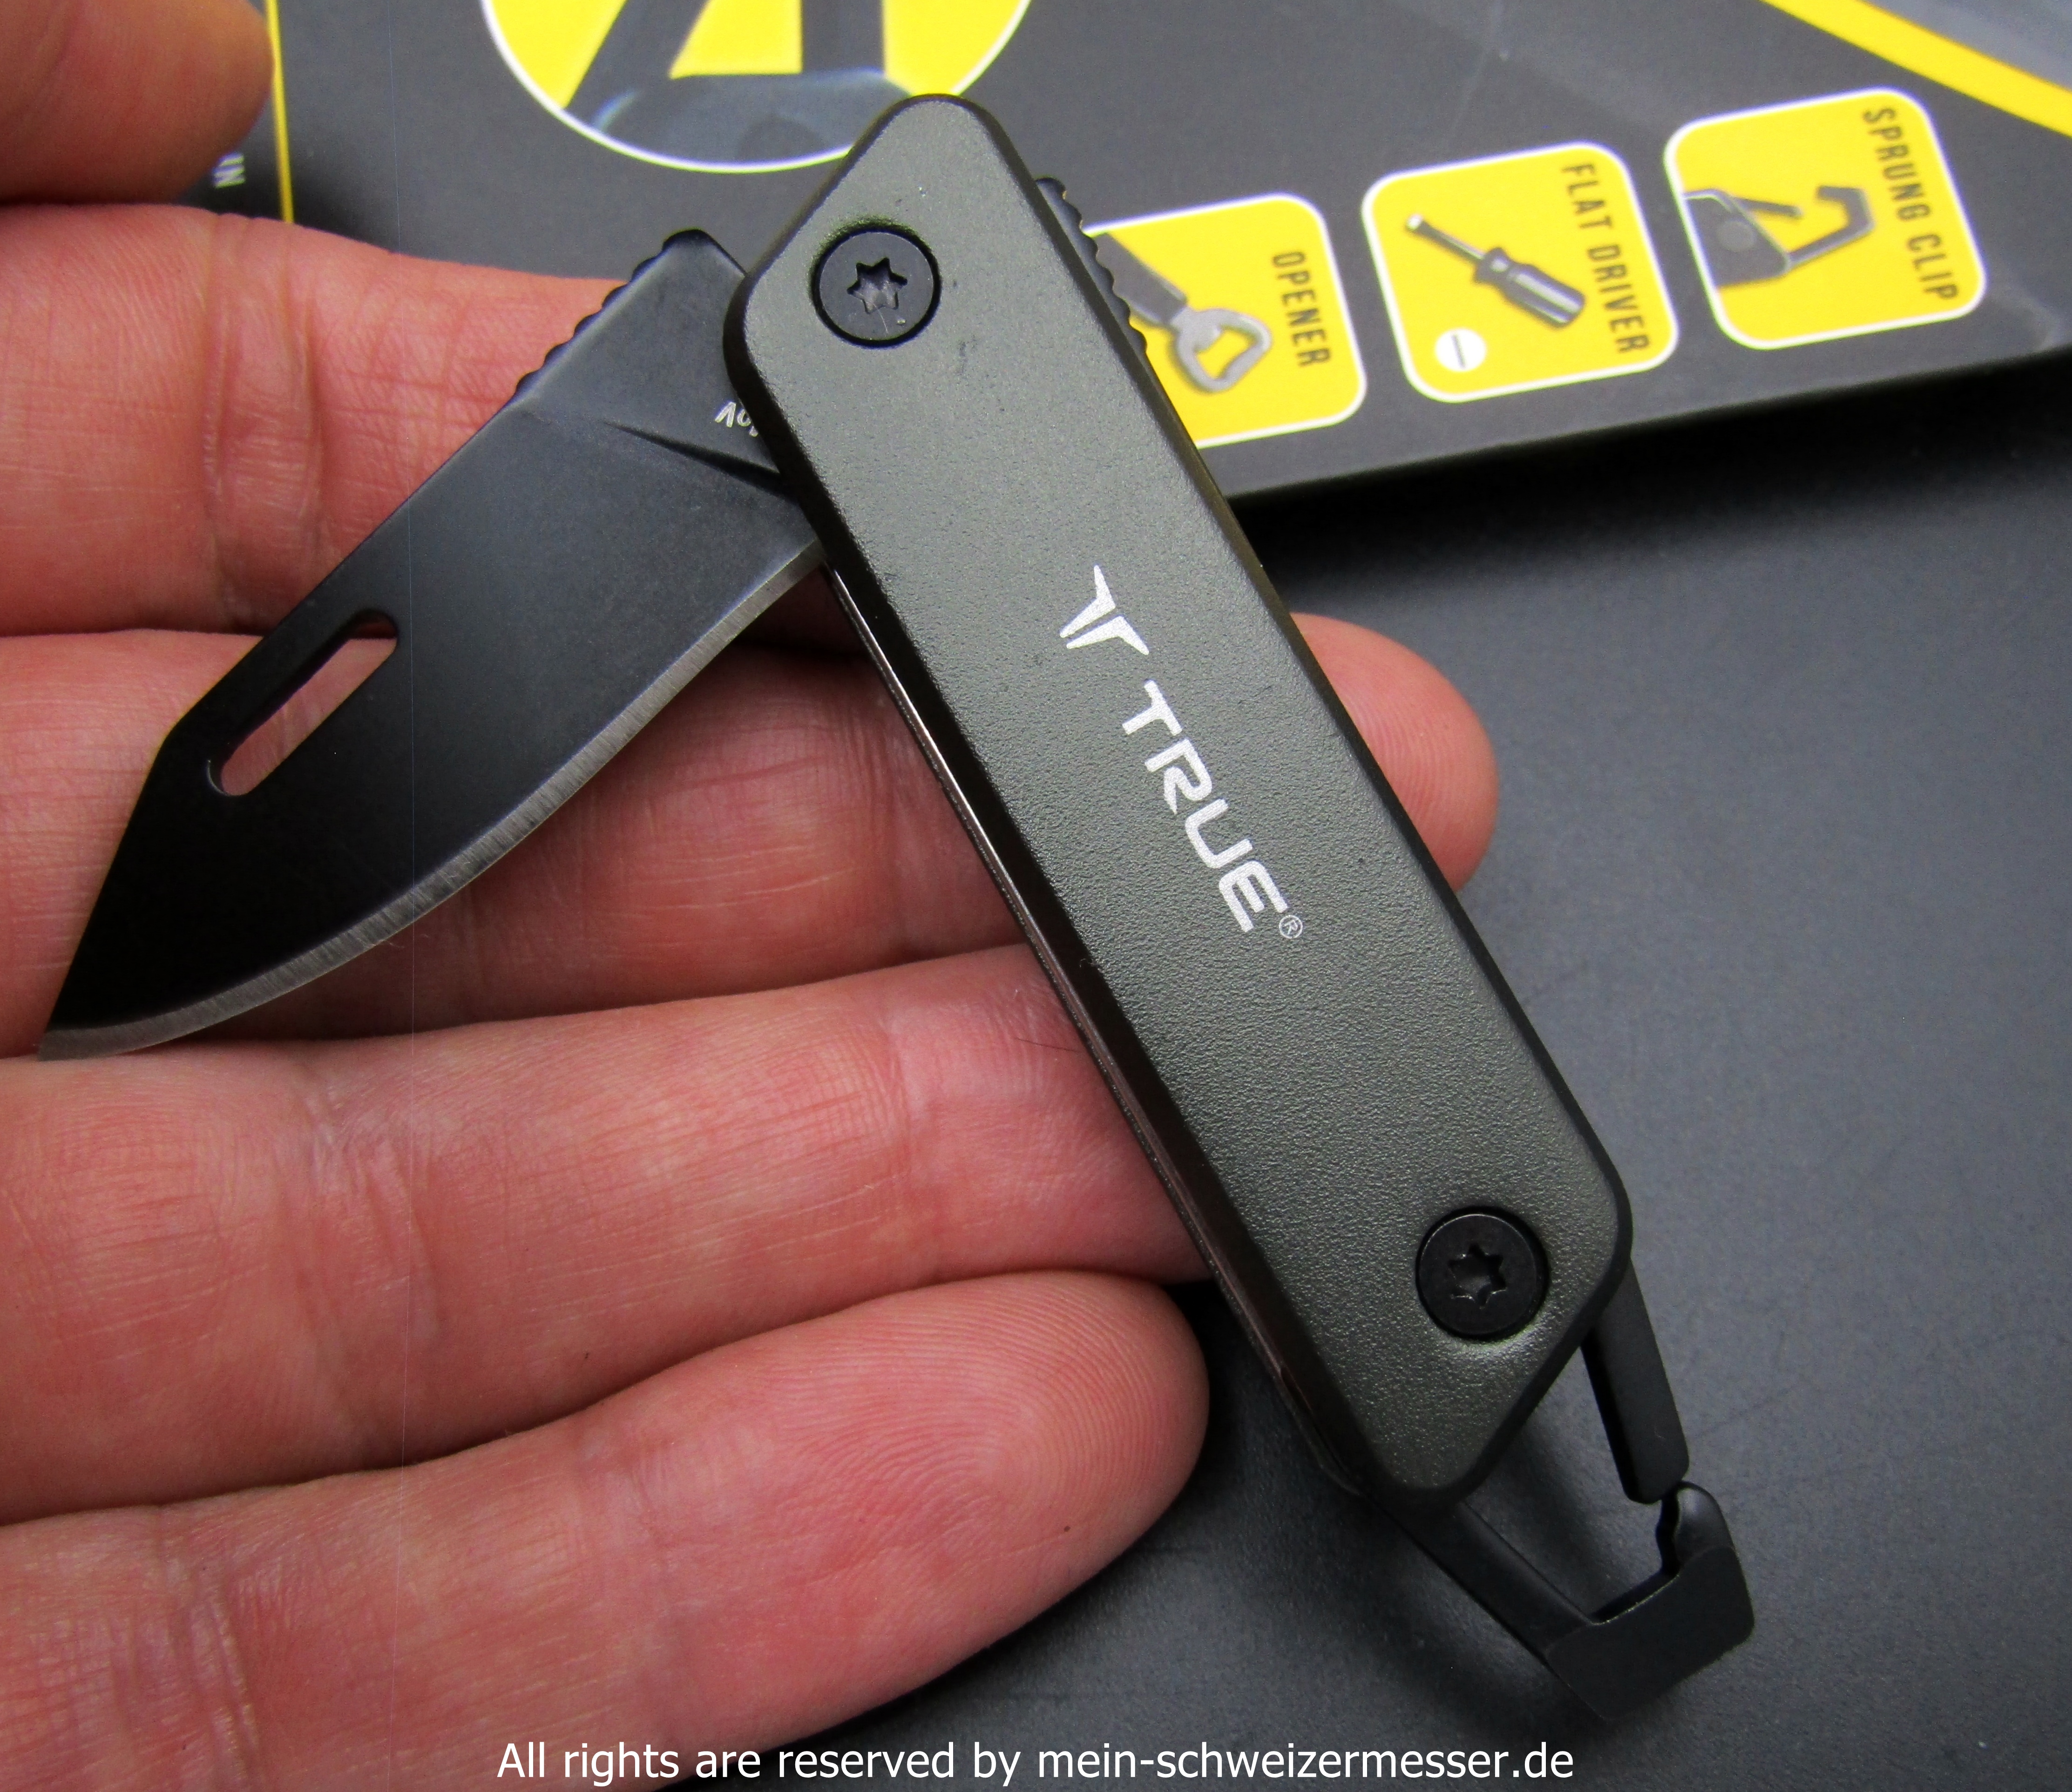 mein-schweizermesser - MINI Taschenmesser True Utility, Schlüsselbund-Taschenmesser  (Key Chain Knife)